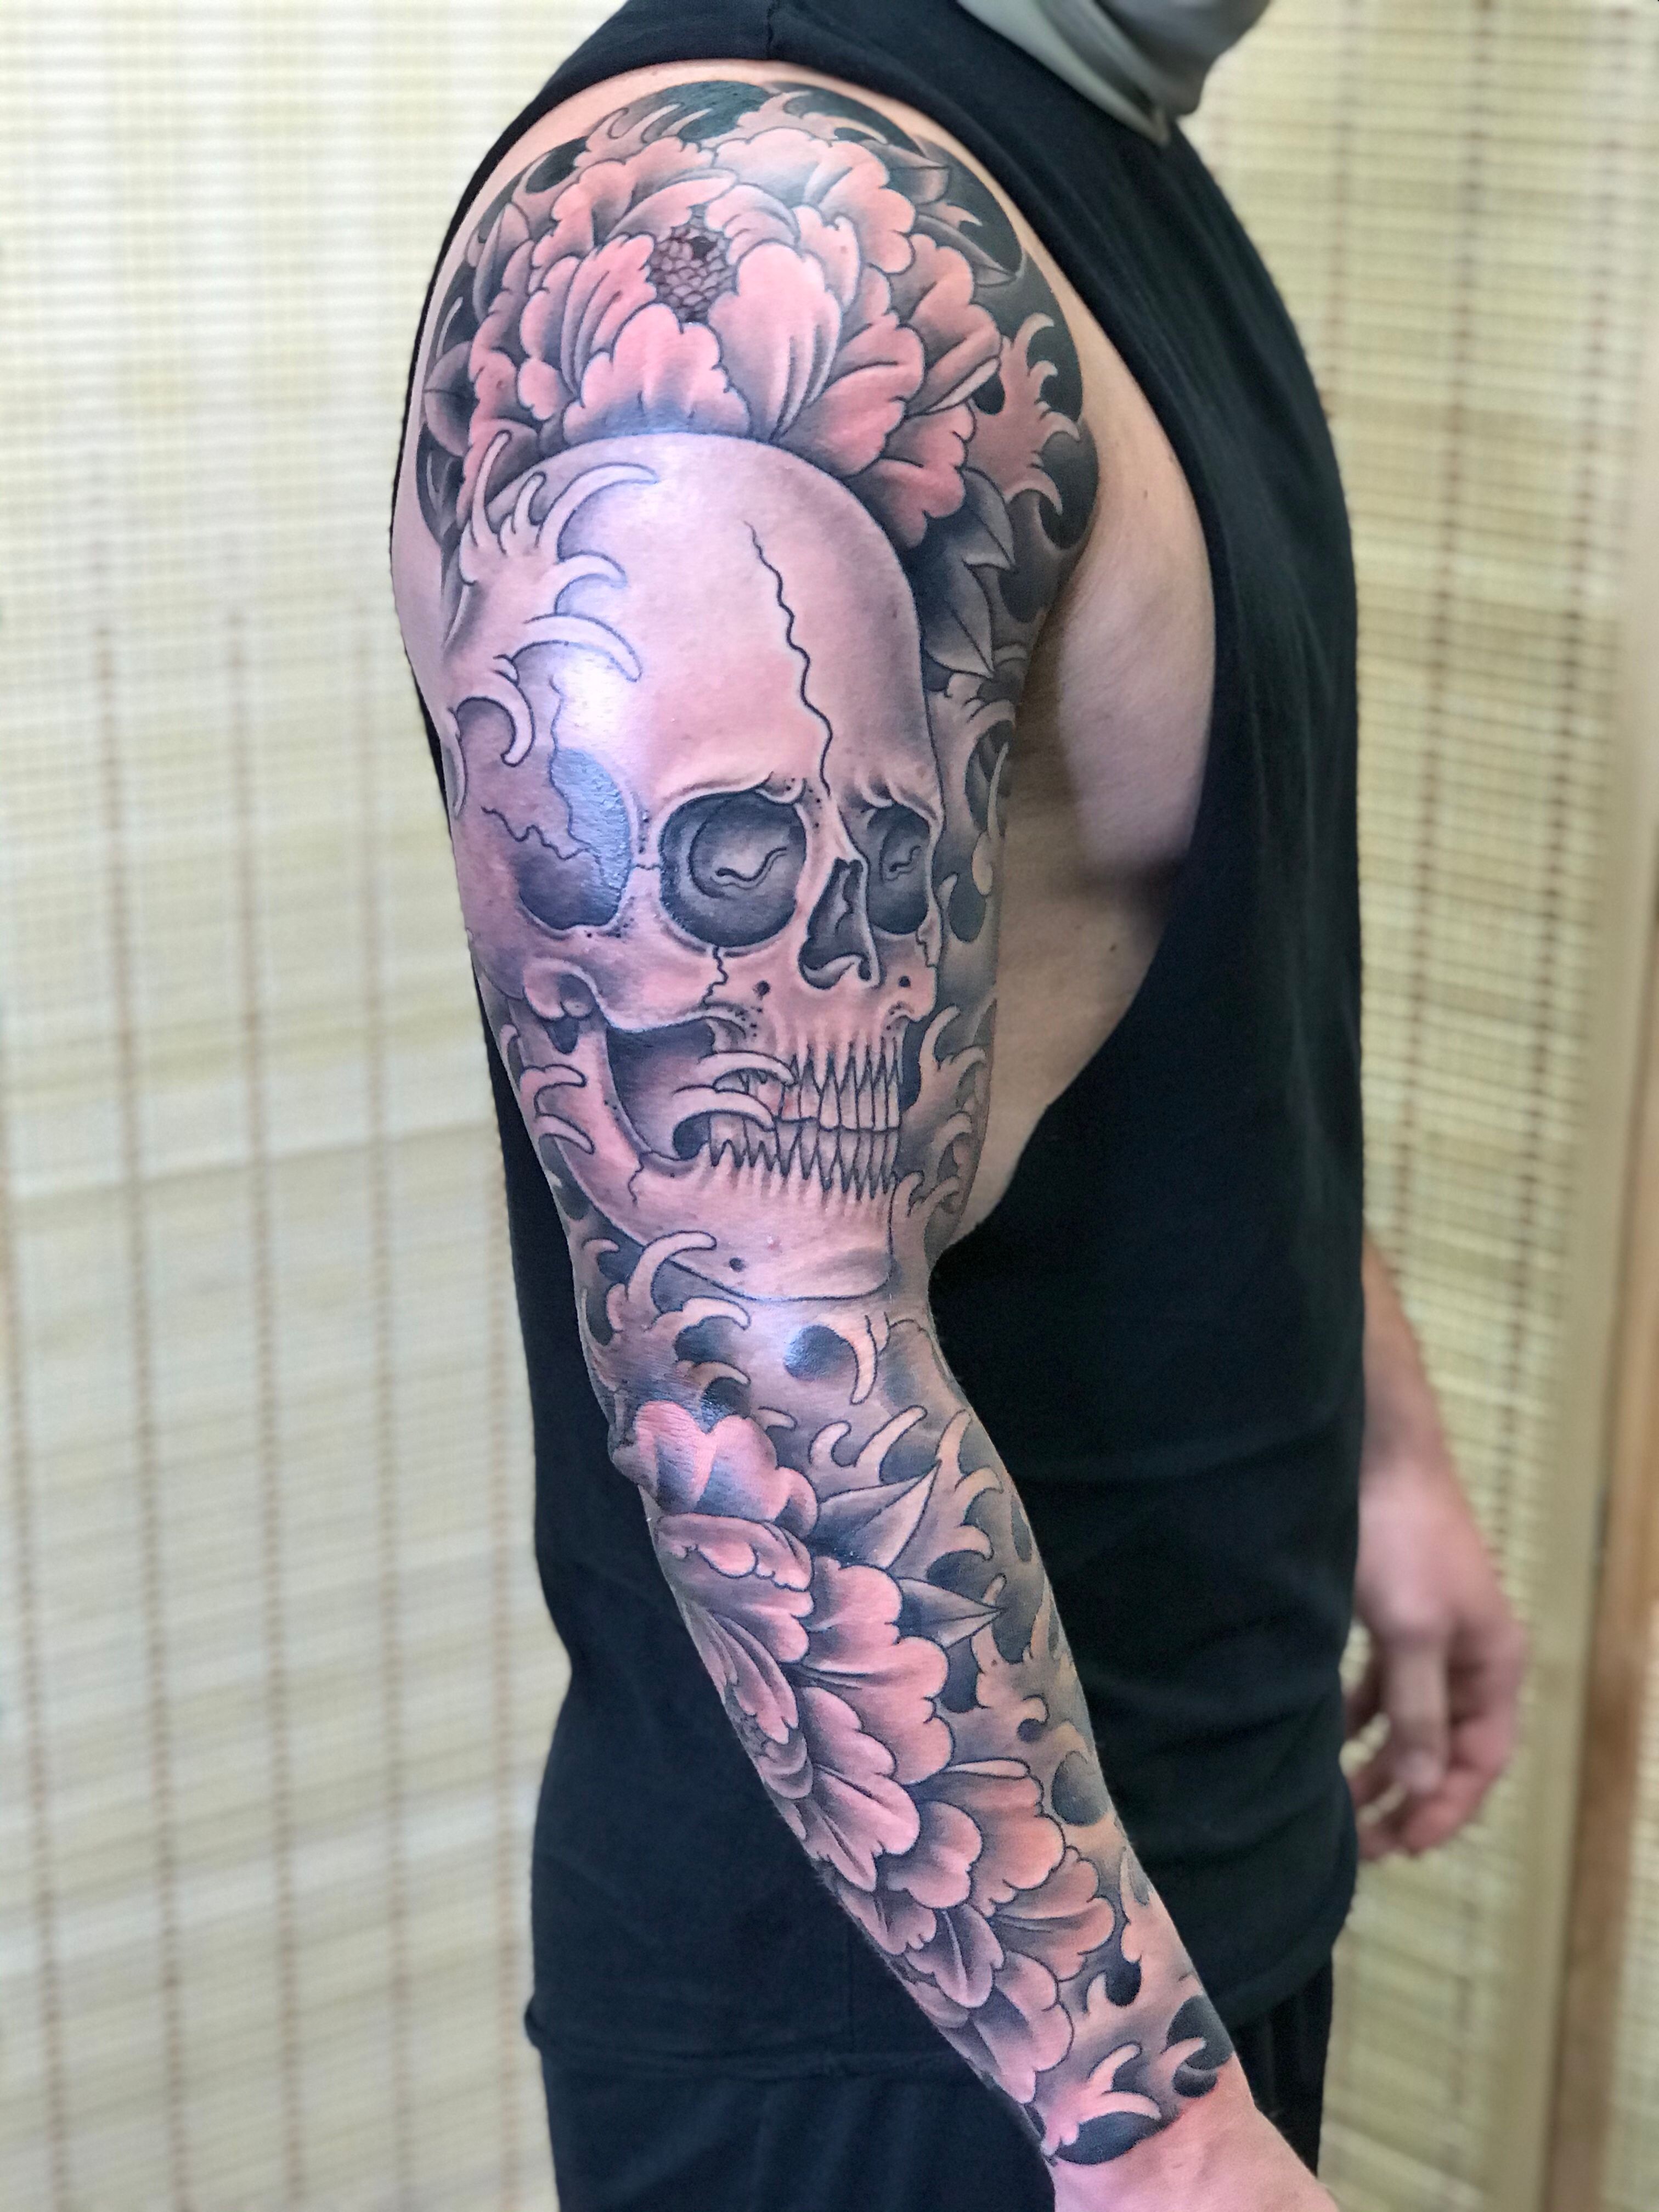 skulls tattoo sleeve